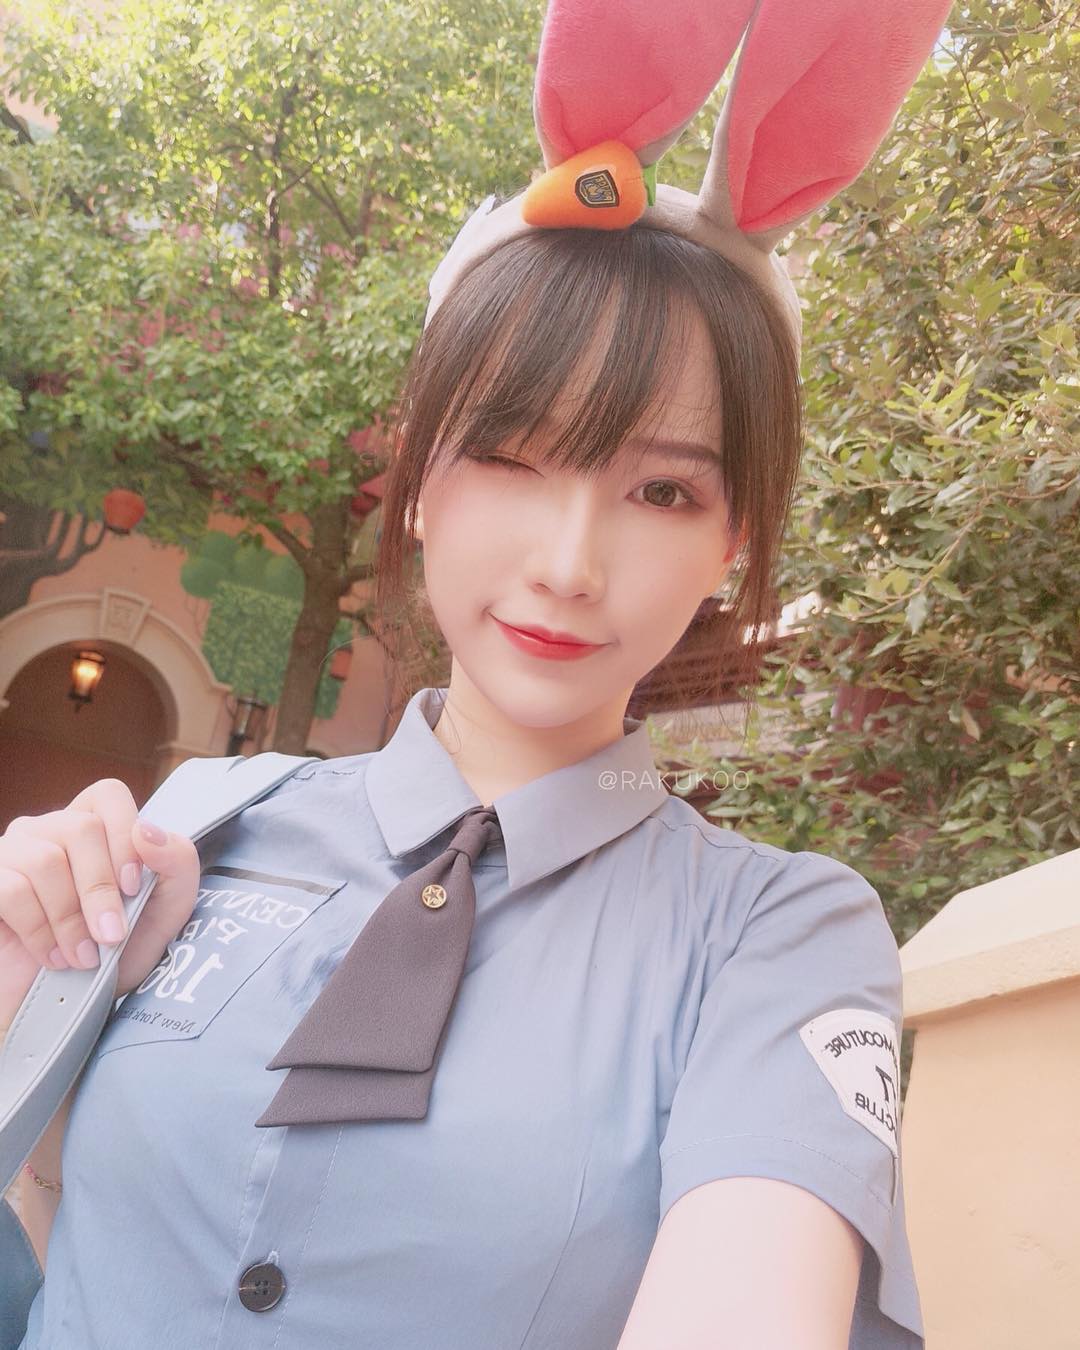  Officer Judy